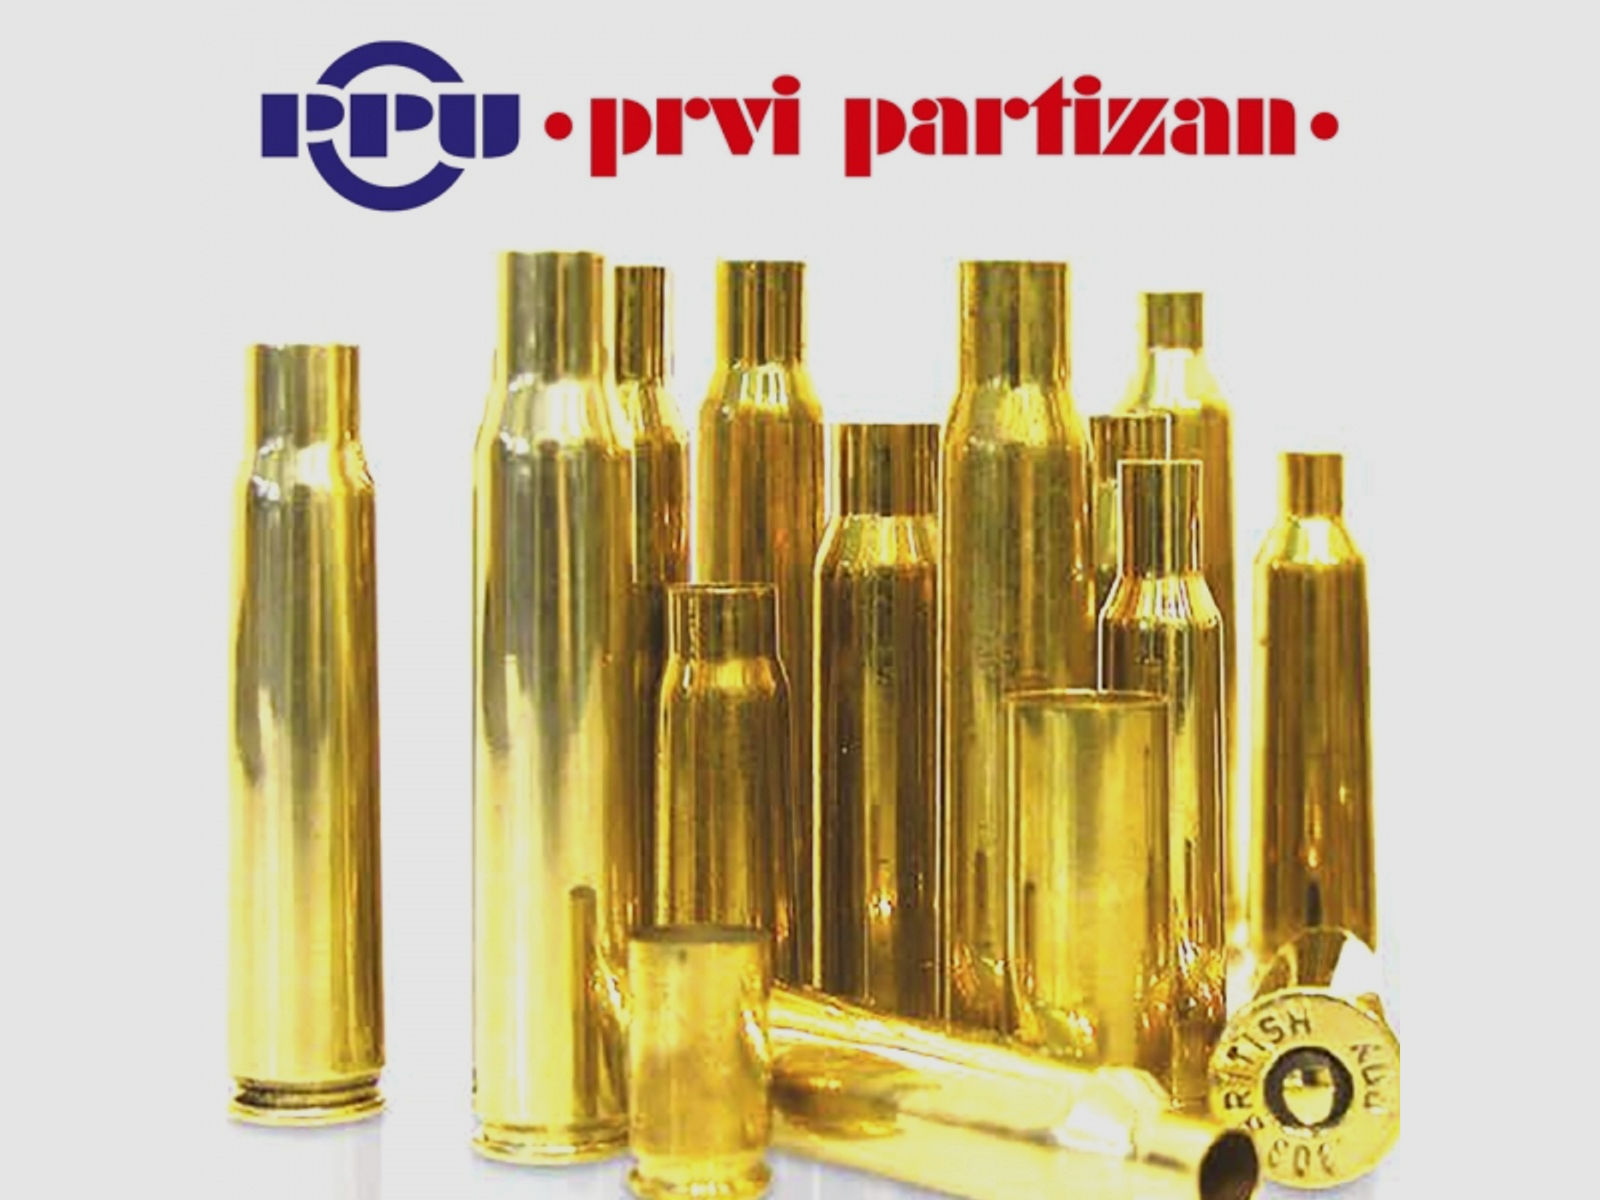 50 Stück NEUE PPU/PrviPartizan Langwaffenhülsen .375 H&H Magnum (Boxerzündung)/Unprimed Brass #C265